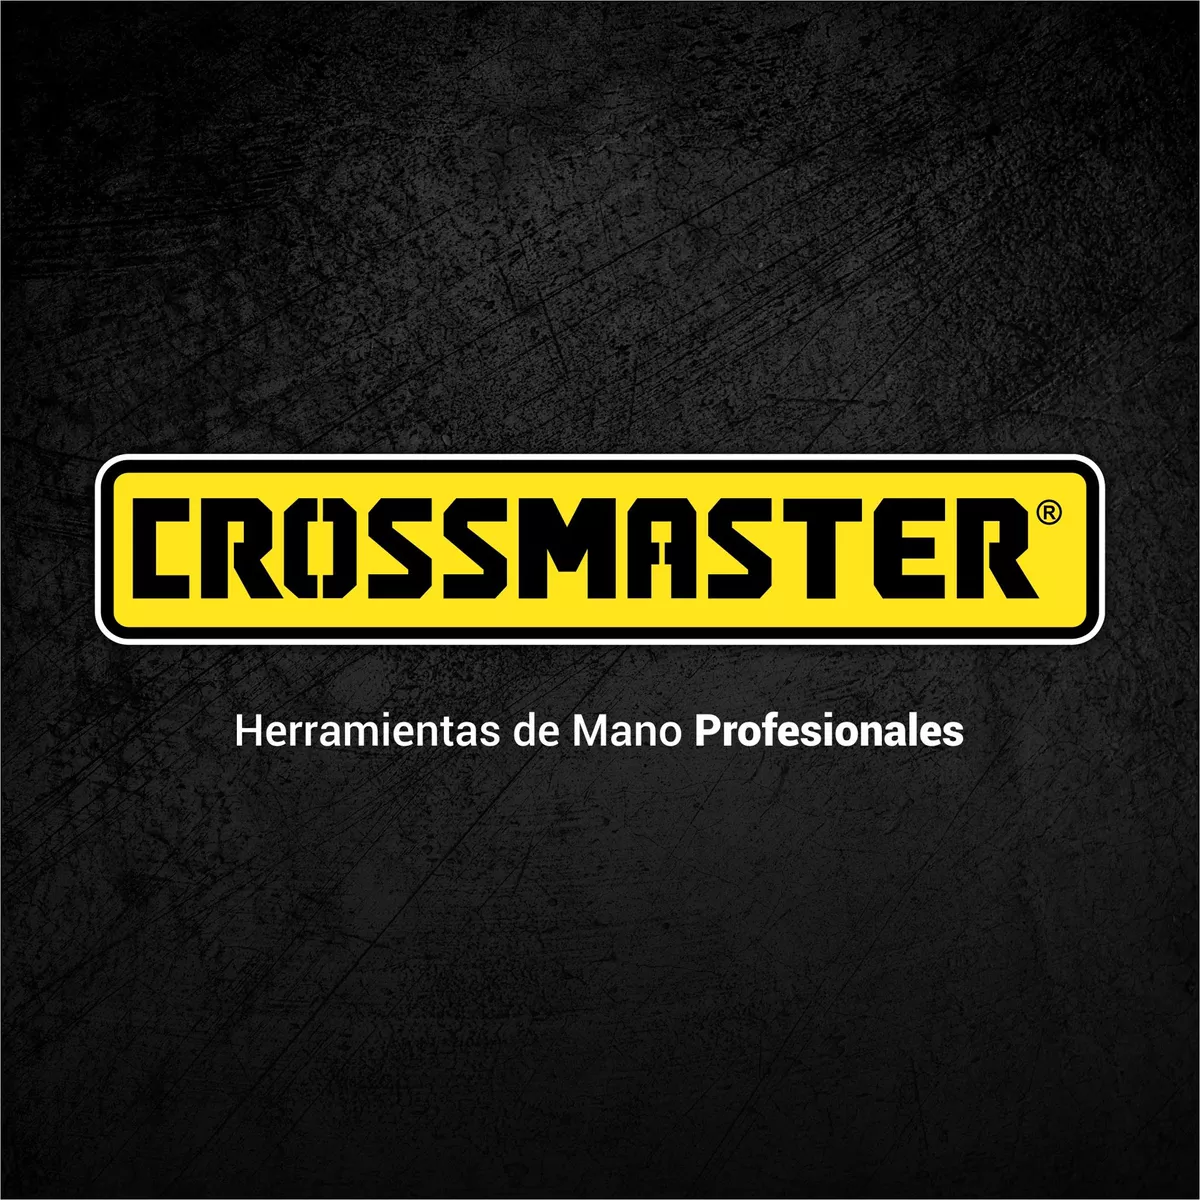 Hacha De Mano Cabo Madera 800 G Crossmaster 9941612